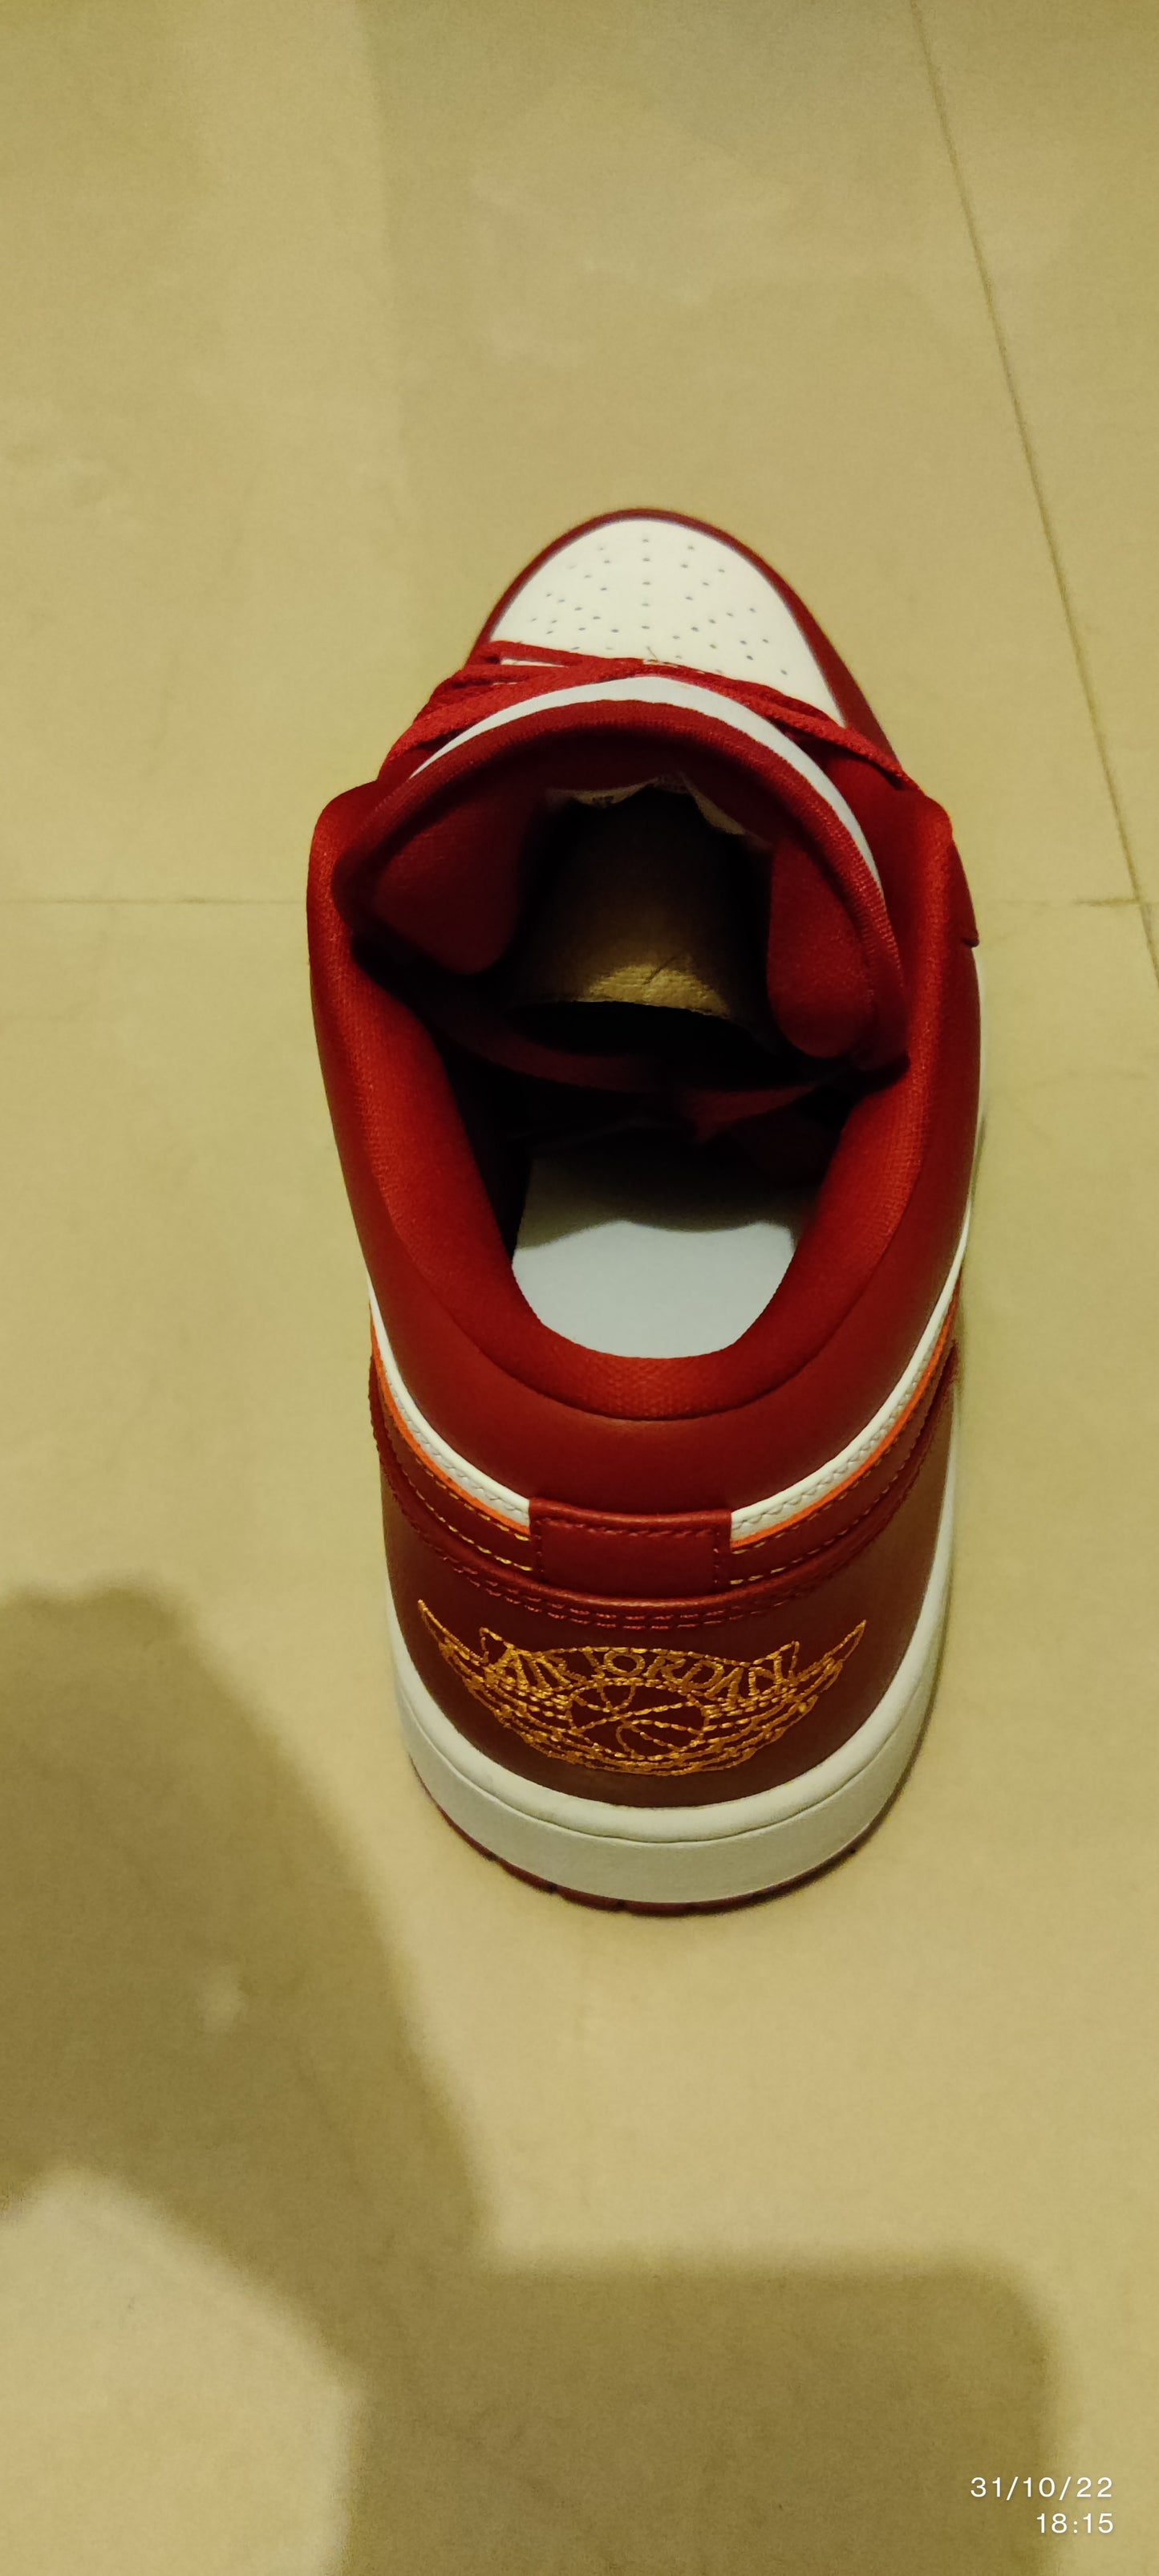 Nike Air Jordan 1 Low Shoes Cardinal Red Yellow White 553558-607